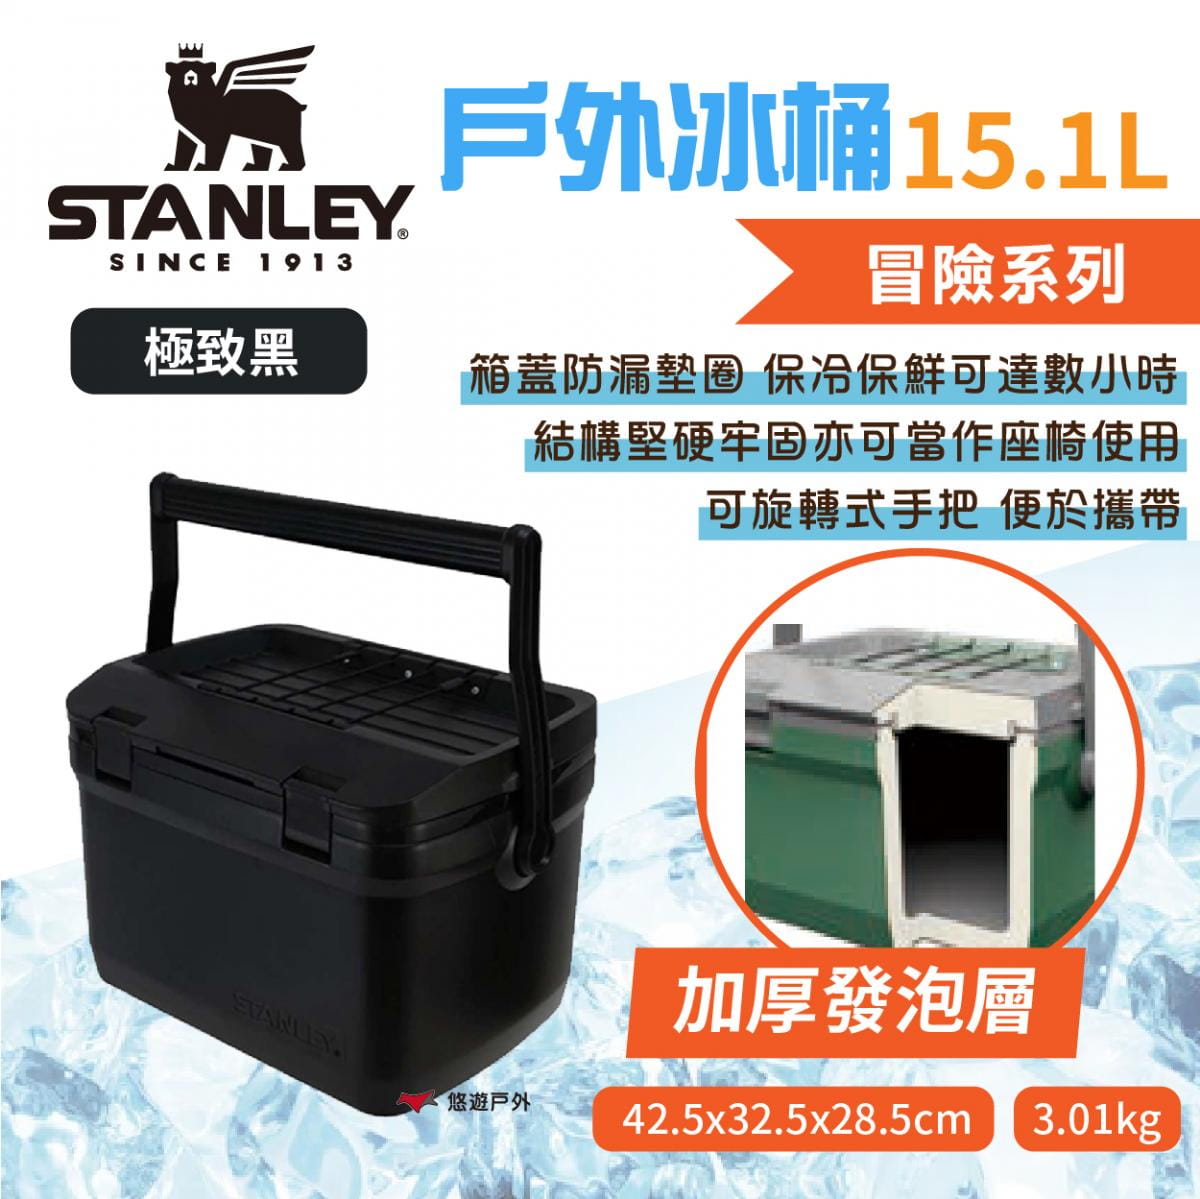 【STANLEY】冒險系列 戶外冰桶 15.1L 極致黑 悠遊戶外 1